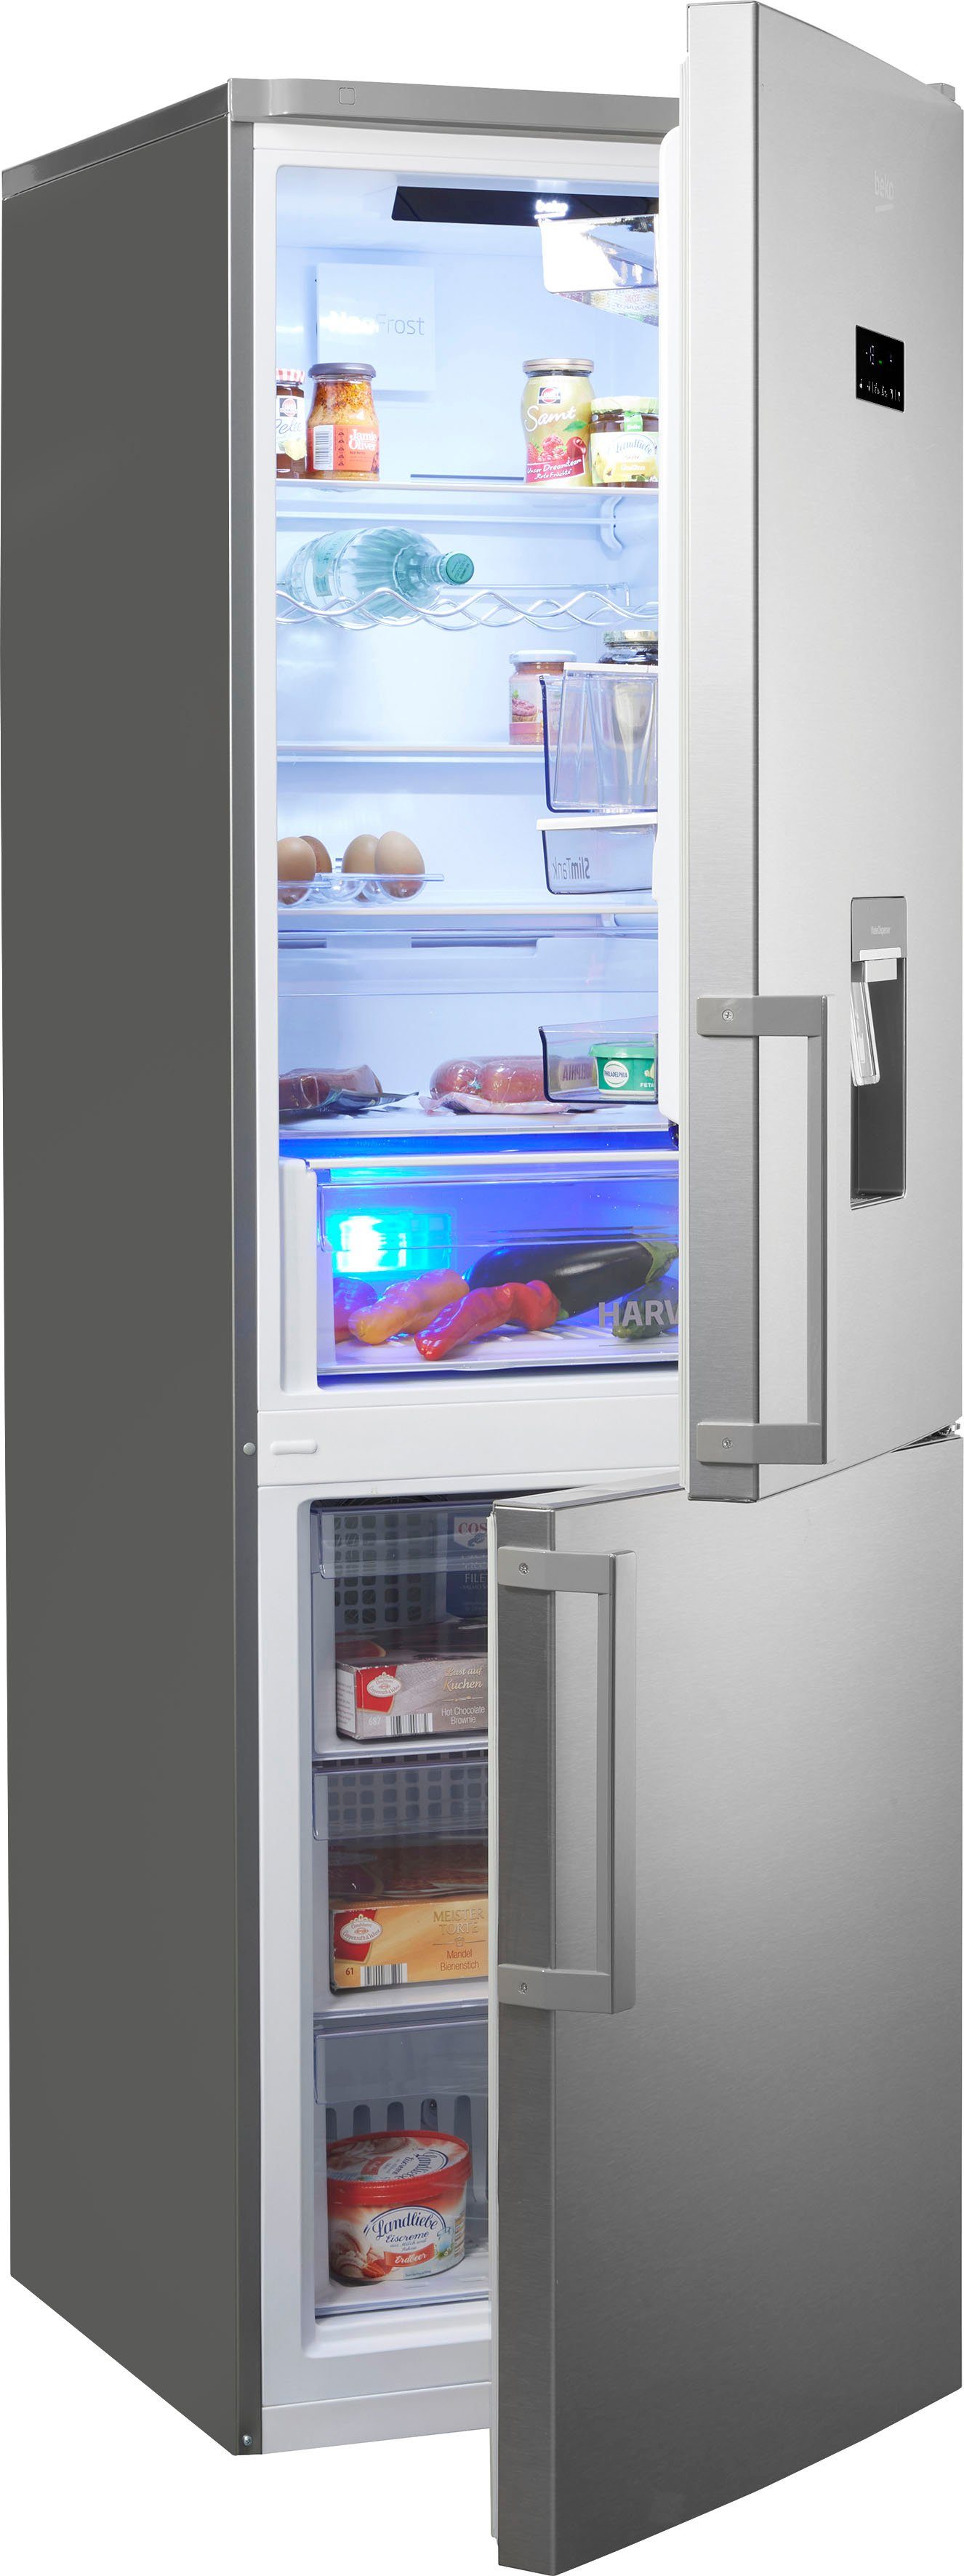 Kühl-Gefrierkombinationen mit Wasserspender kaufen | OTTO